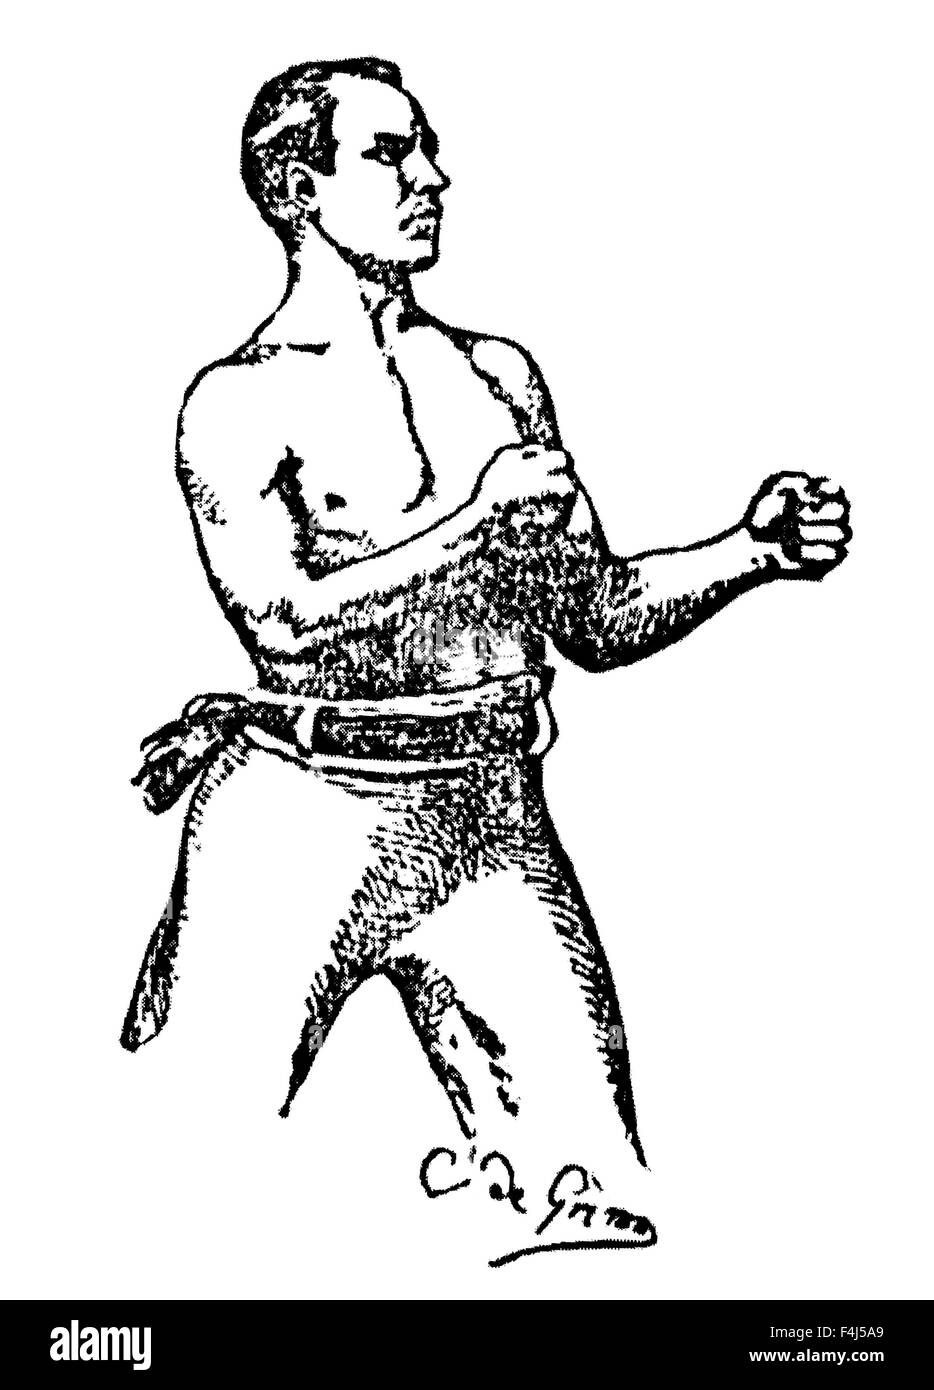 Oldtimer Zeitung Porträt des irisch-amerikanischen Mittelgewicht-Boxer Dominick McCaffrey (1863-1926). McCaffrey, geboren in Pittsburgh, Pennsylvania, war ein prominenter bloßen Fäusten und behandschuhten Kämpfer in den 1880er Jahren kämpften oft Männer viel größer als er selbst. Seine Kämpfe enthalten eine Niederlage von amerikanischen Schwergewichts-Champion John L Sullivan in einem behandschuhten Kampf im Jahre 1885. Stockfoto